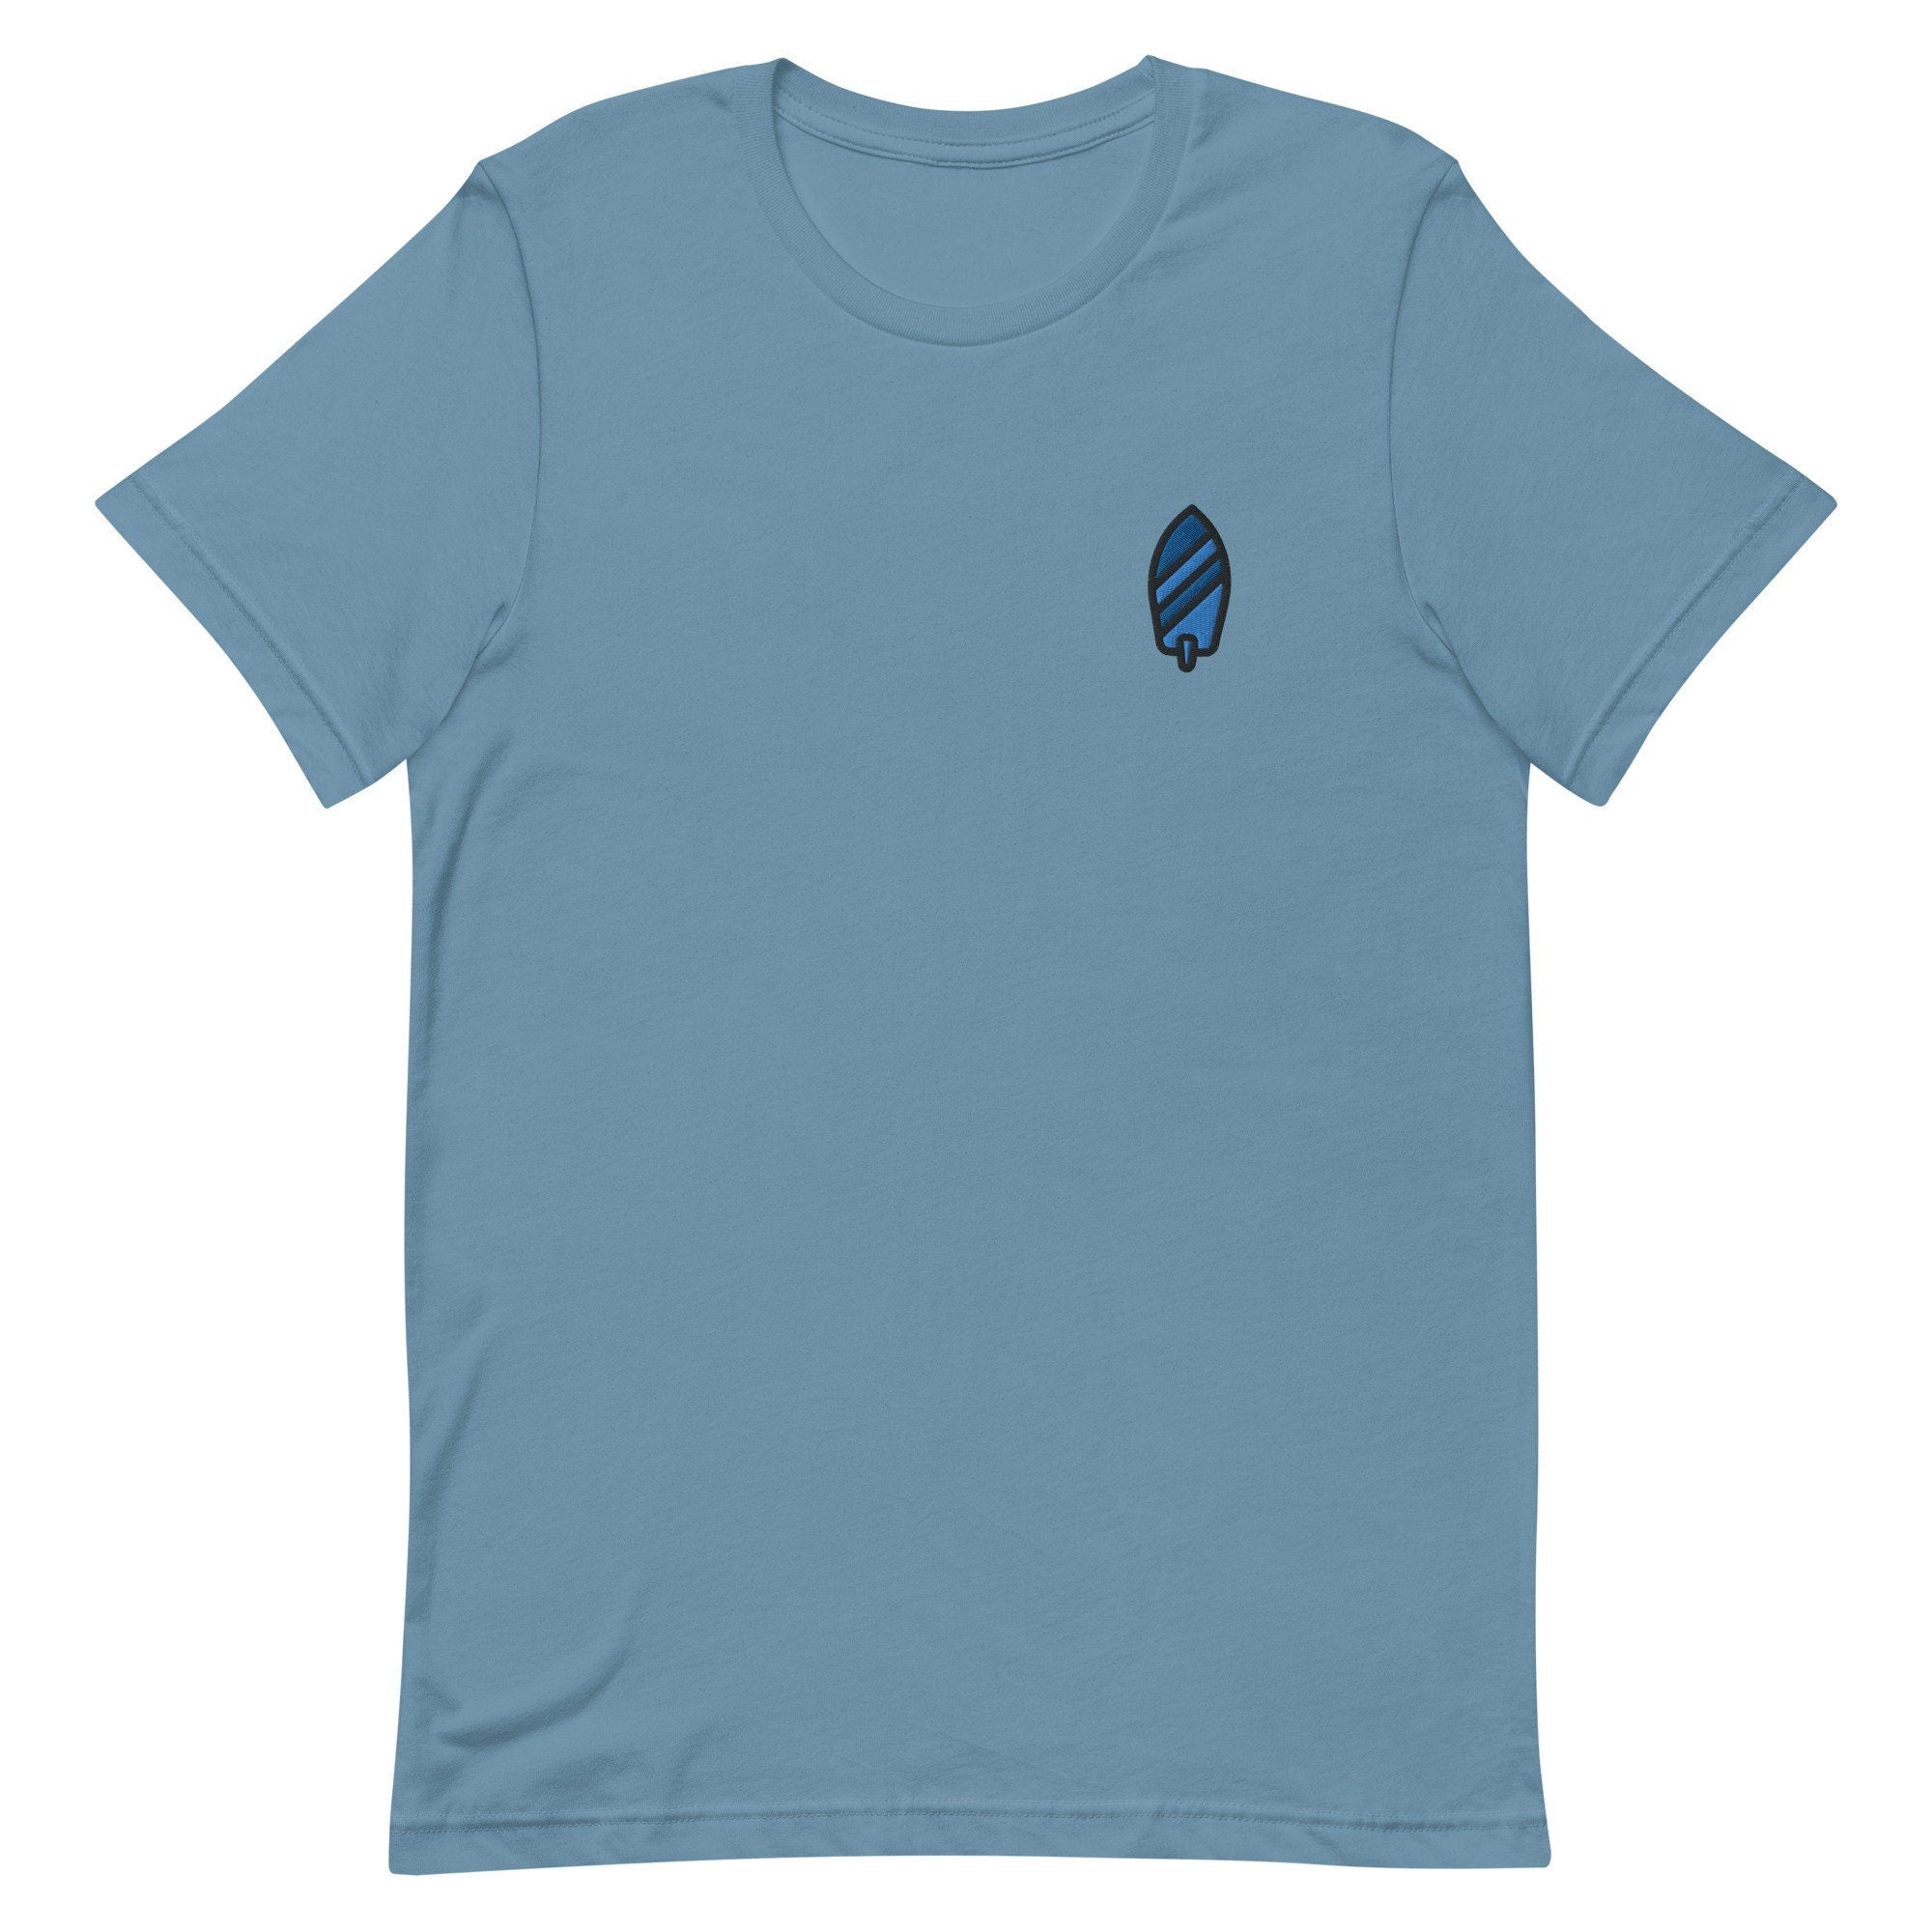 Surfboard Premium Men's T-Shirt, Embroidered Men's T-Shirt Gift for Boyfriend, Men's Short Sleeve Shirt - Multiple Colors